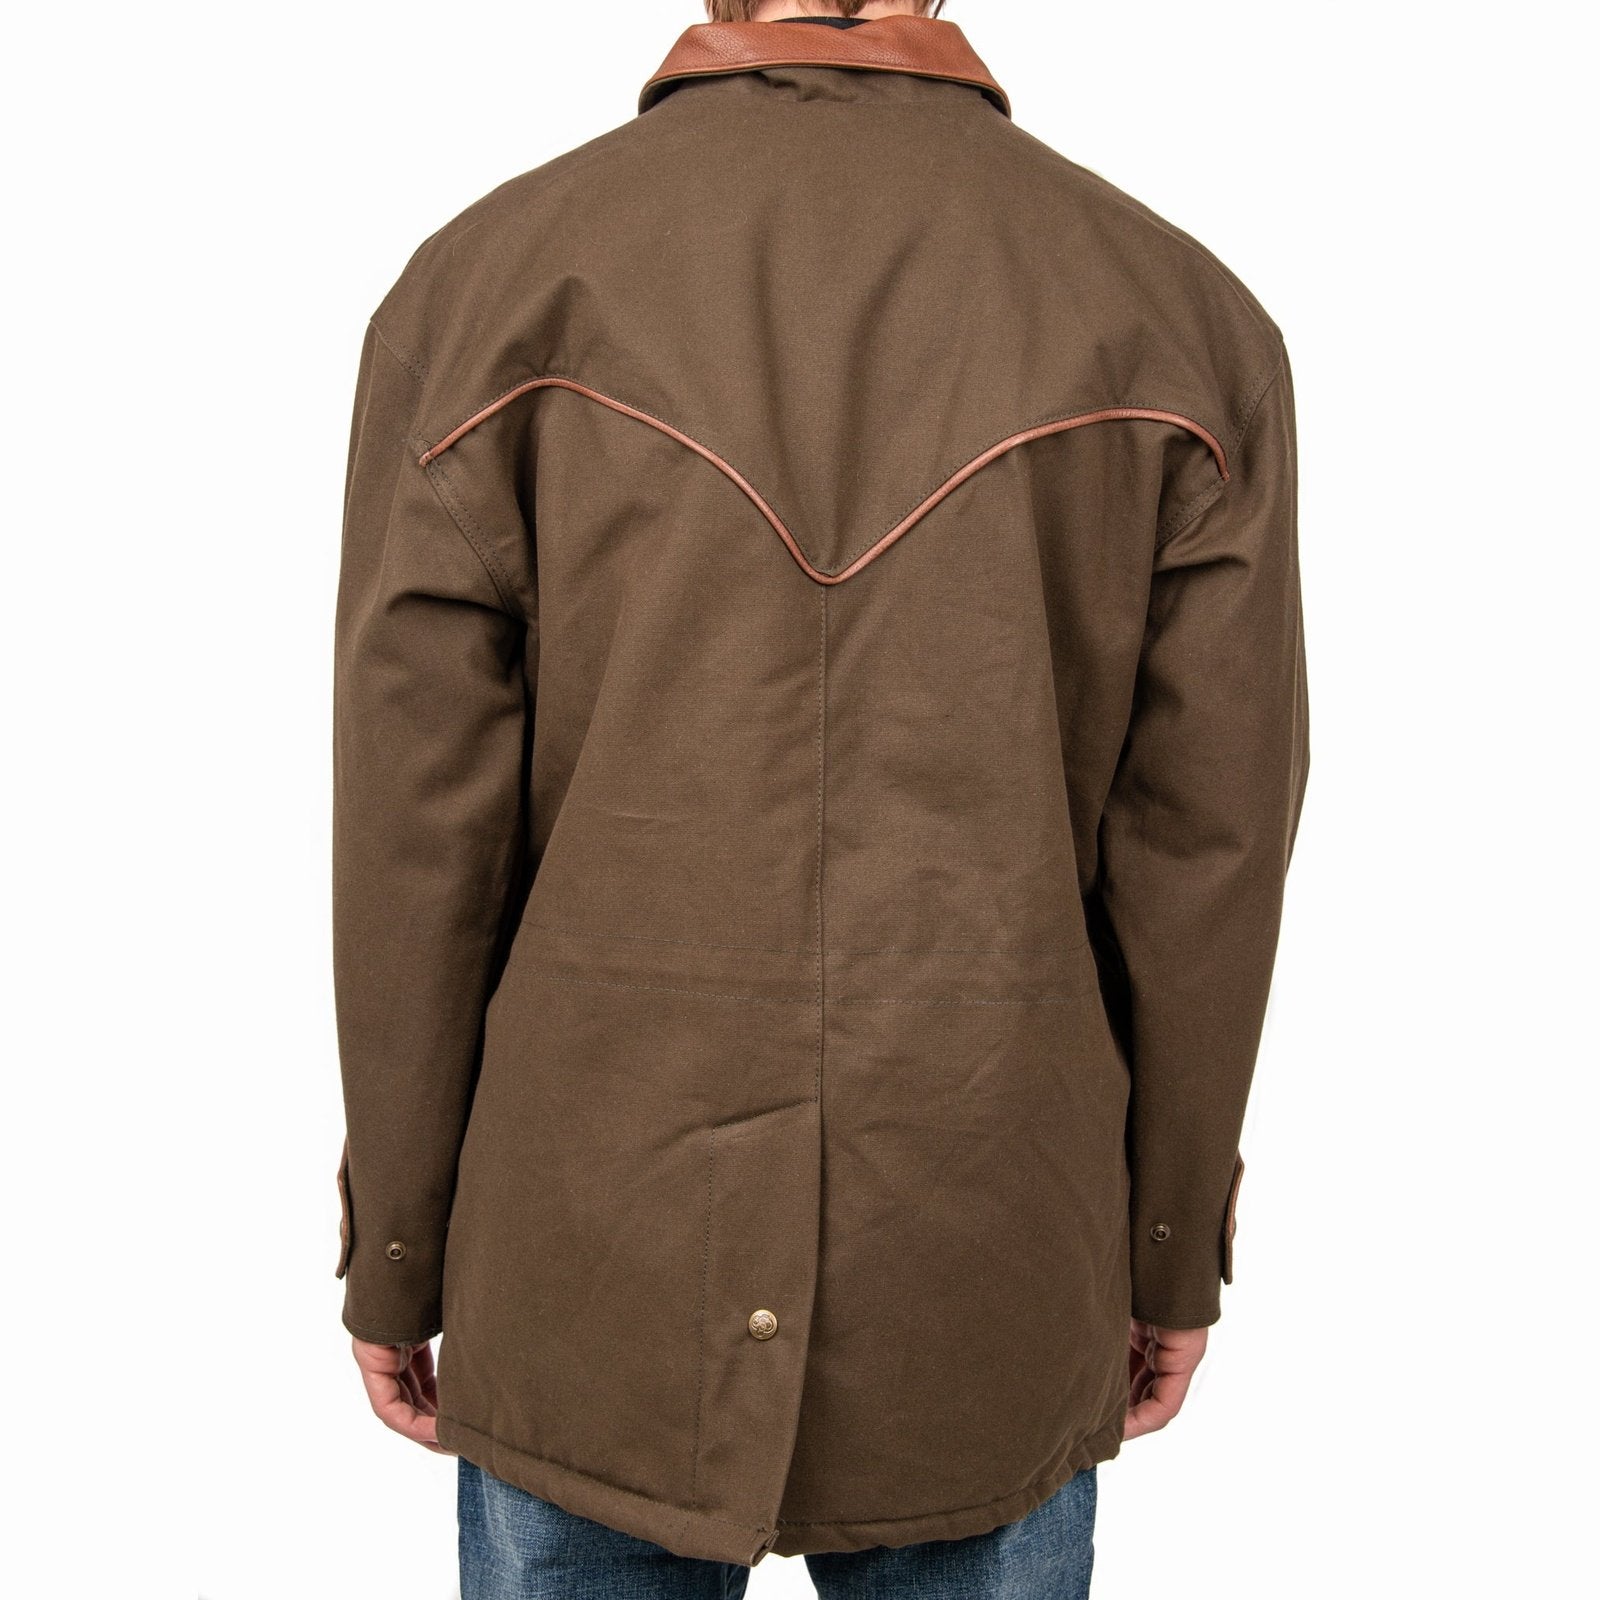 Schaefer Men’s Chore Jacket Duck Canvas Plaid Lining 215 - Schaefer Outfitter